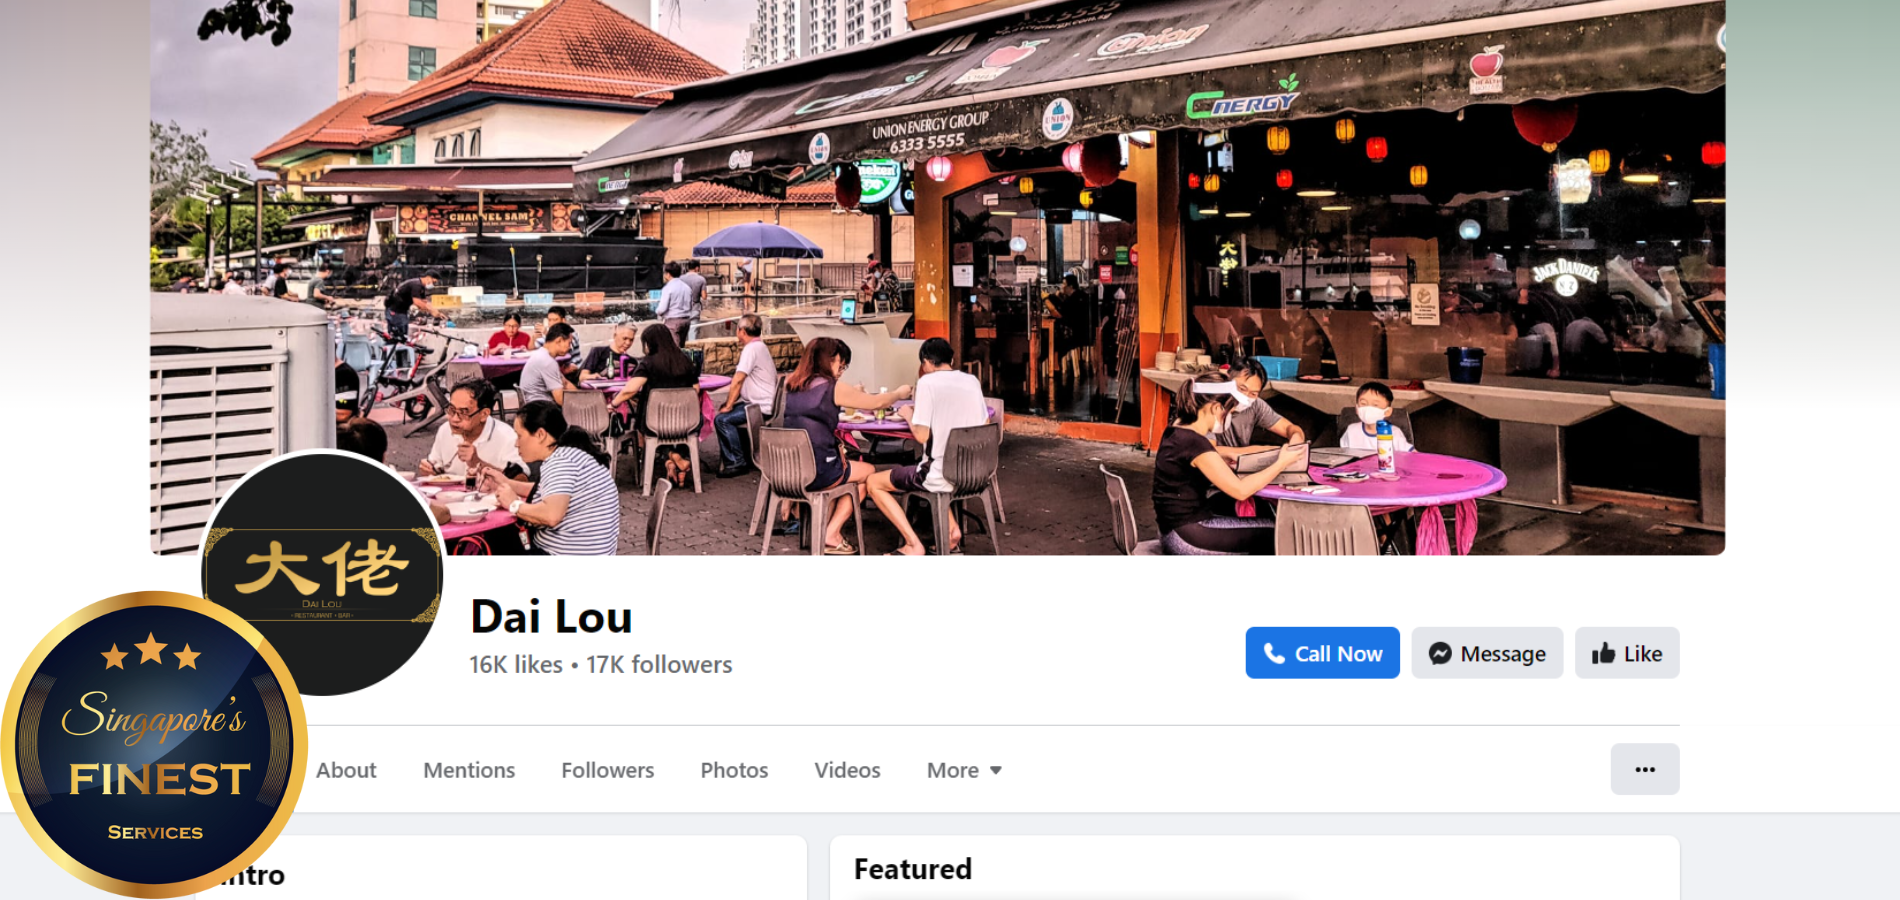 The Finest Lok Lok Spots in Singapore